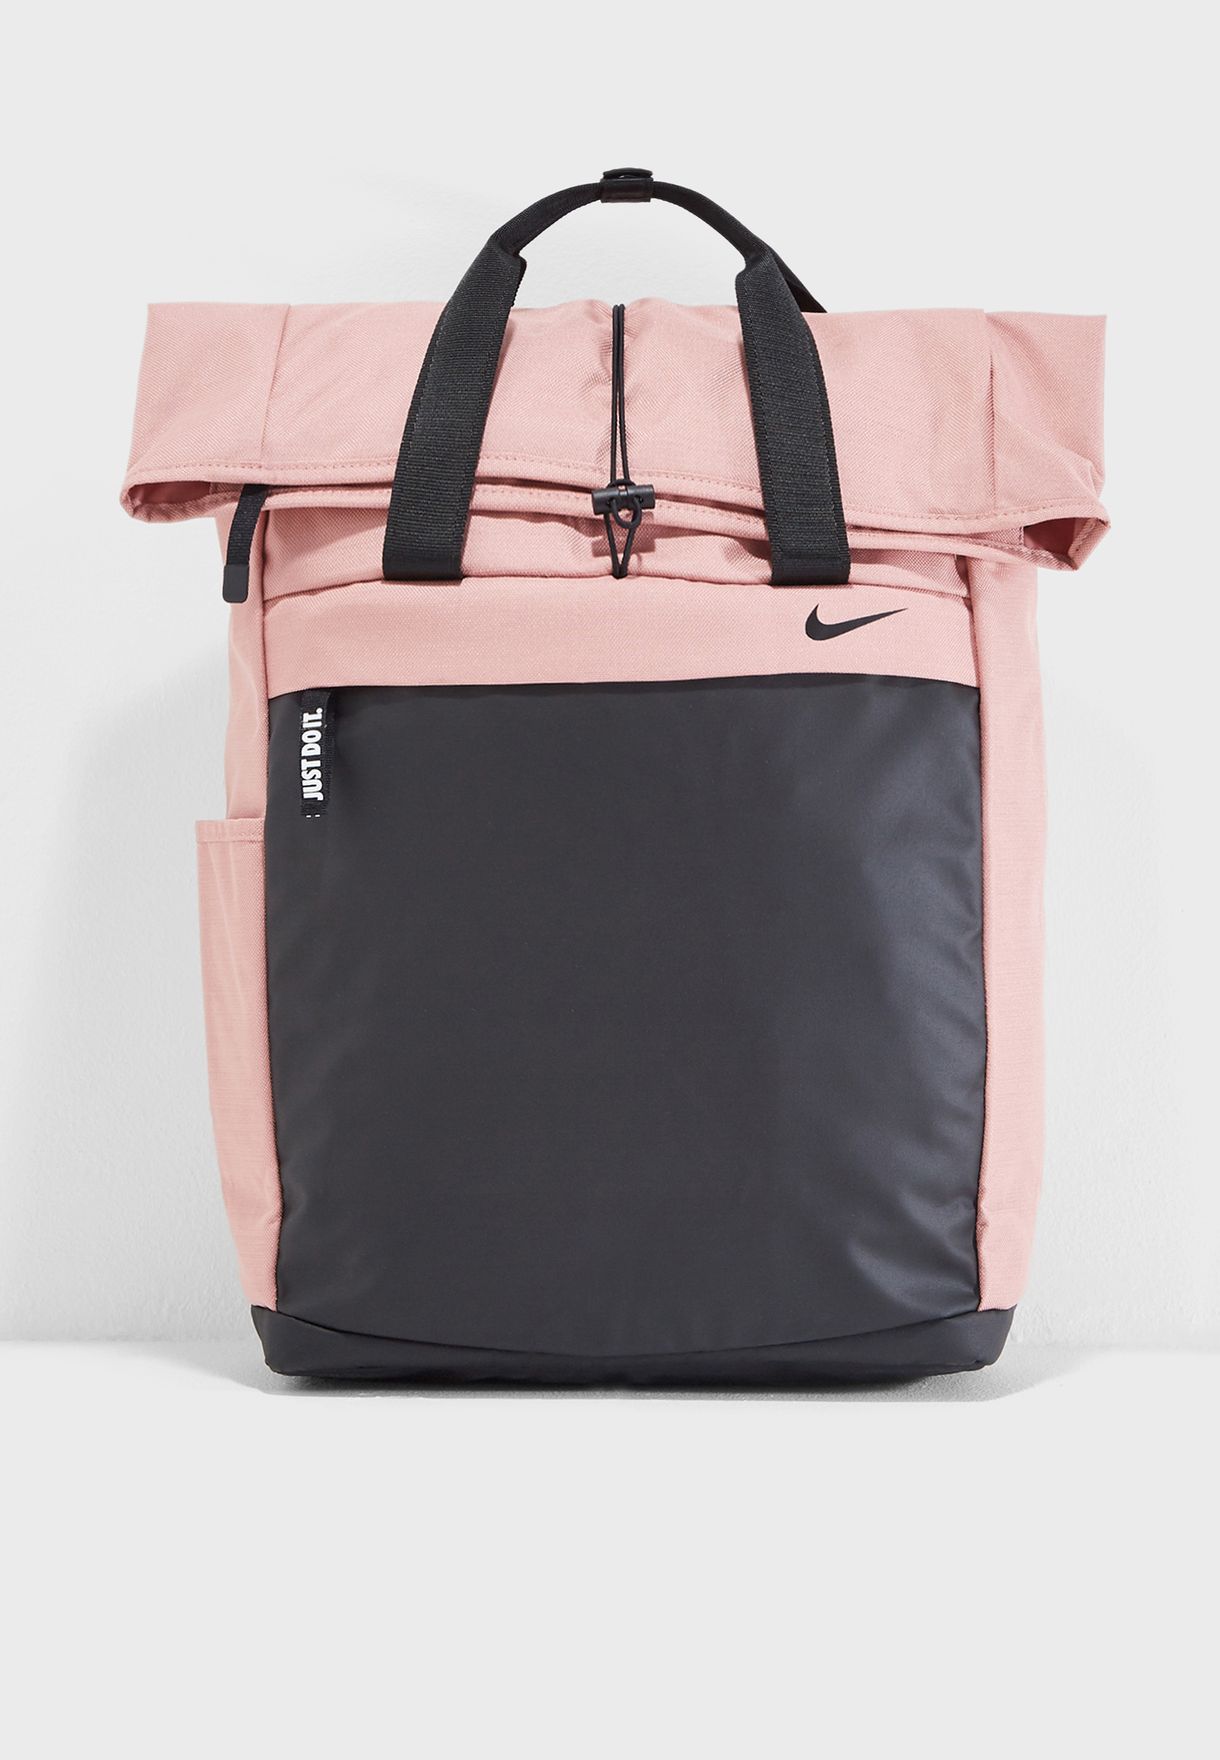 nike radiate backpack pink